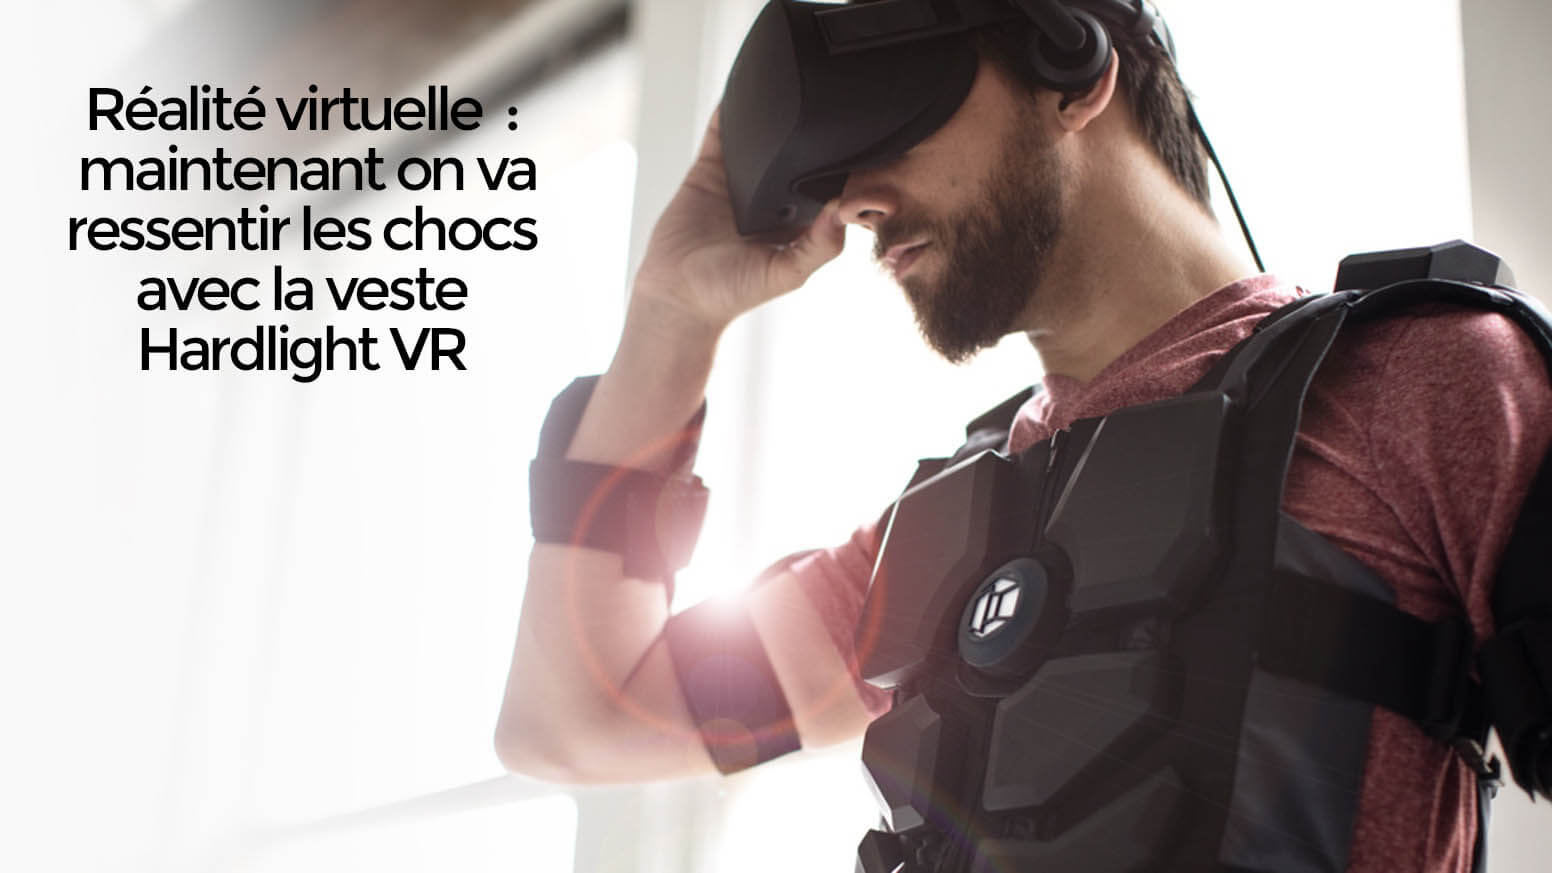 Réalité virtuelle maintenant on va ressentir les chocs avec la veste Hardlight VR